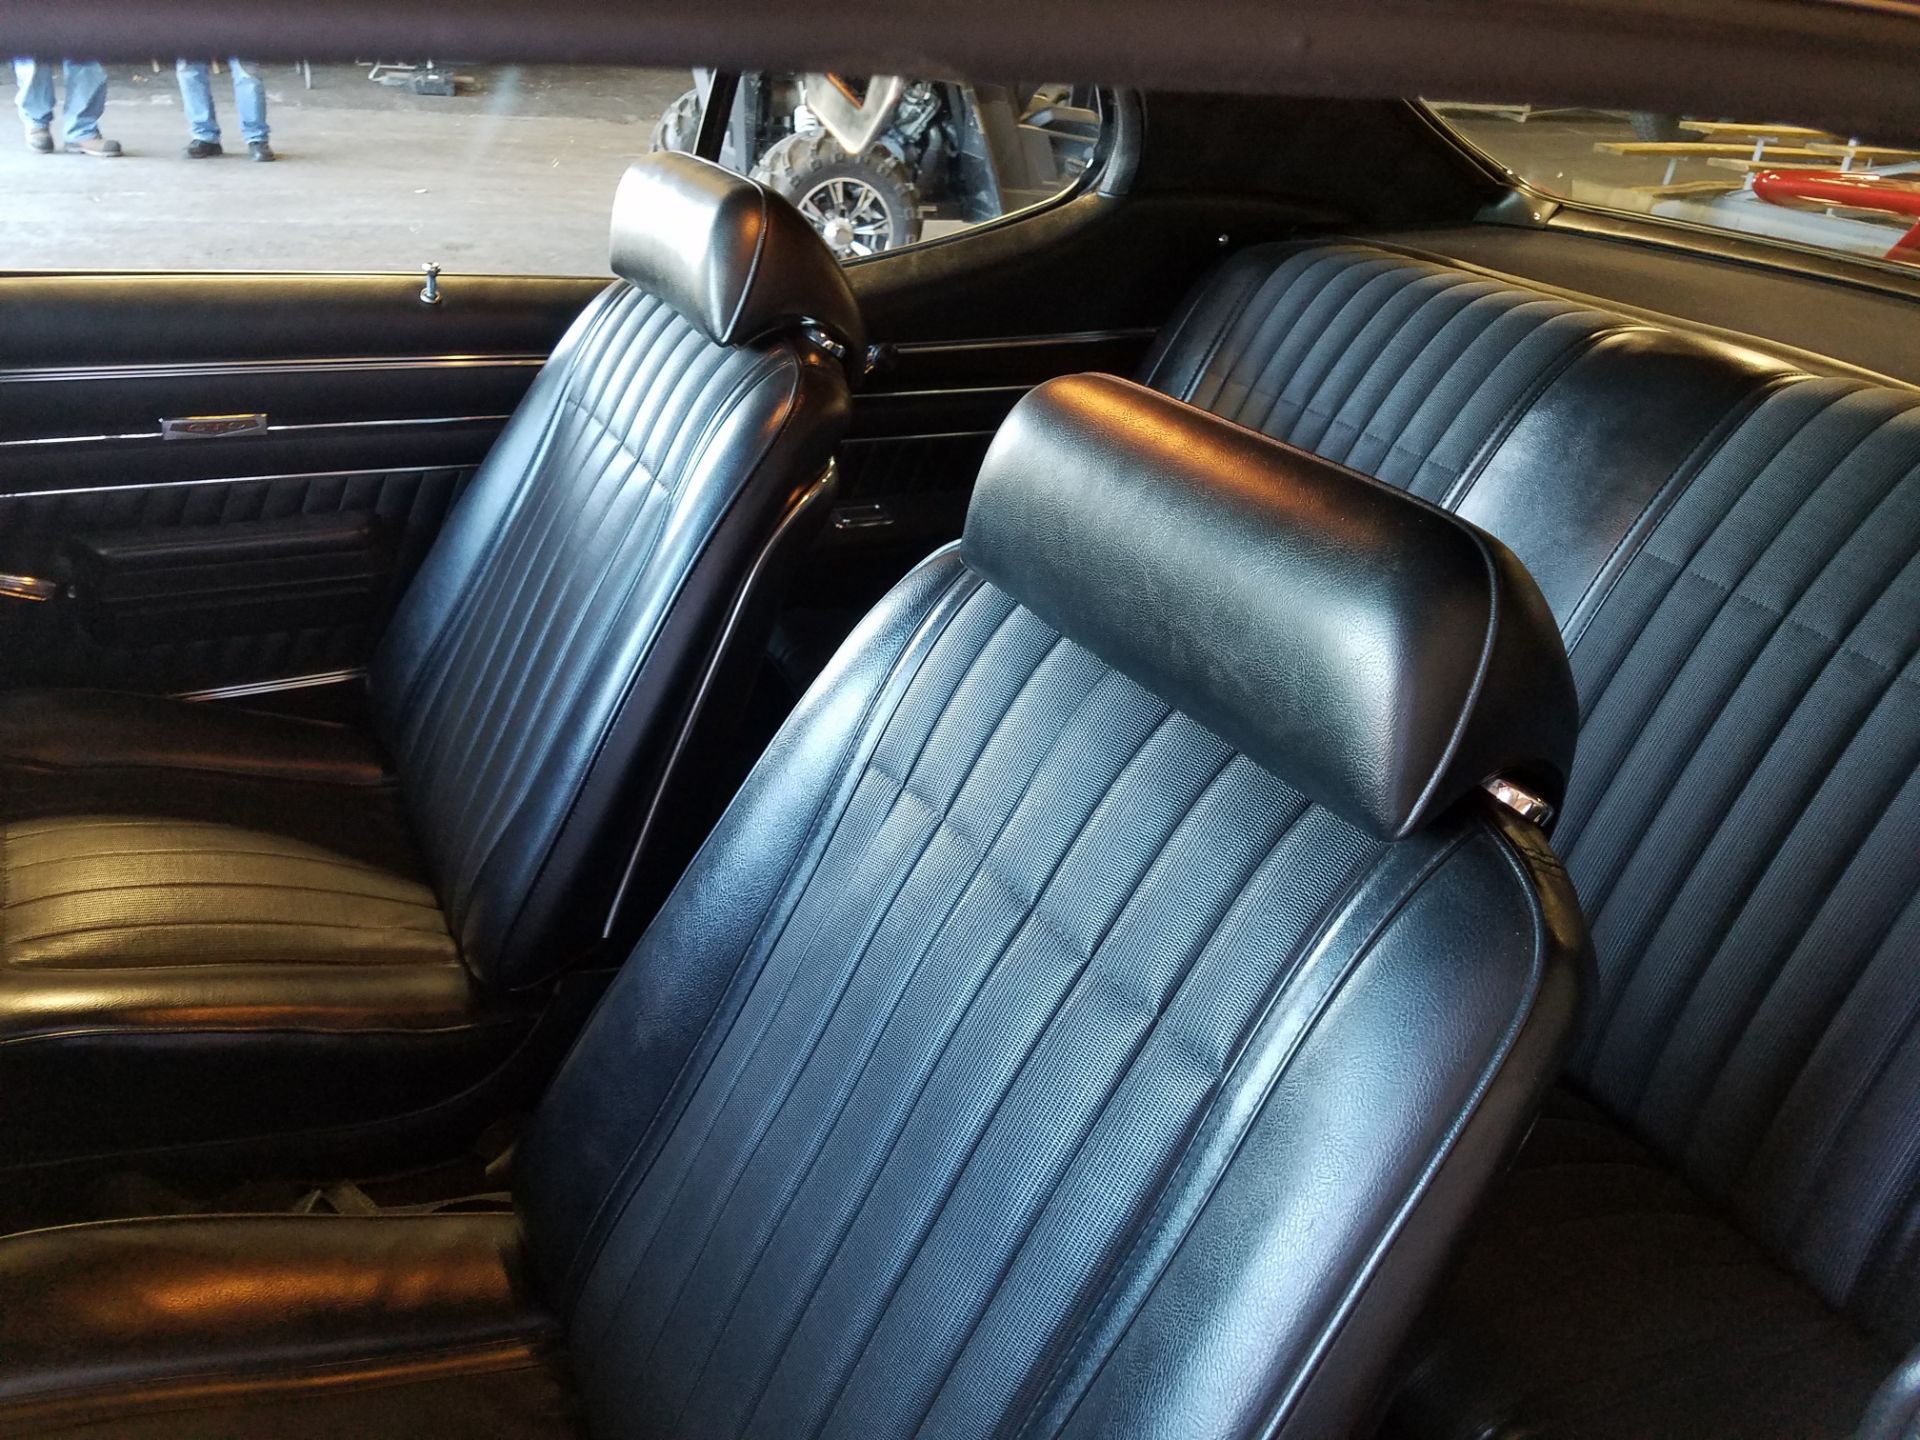 1970 Pontiac GTO - Image 6 of 7